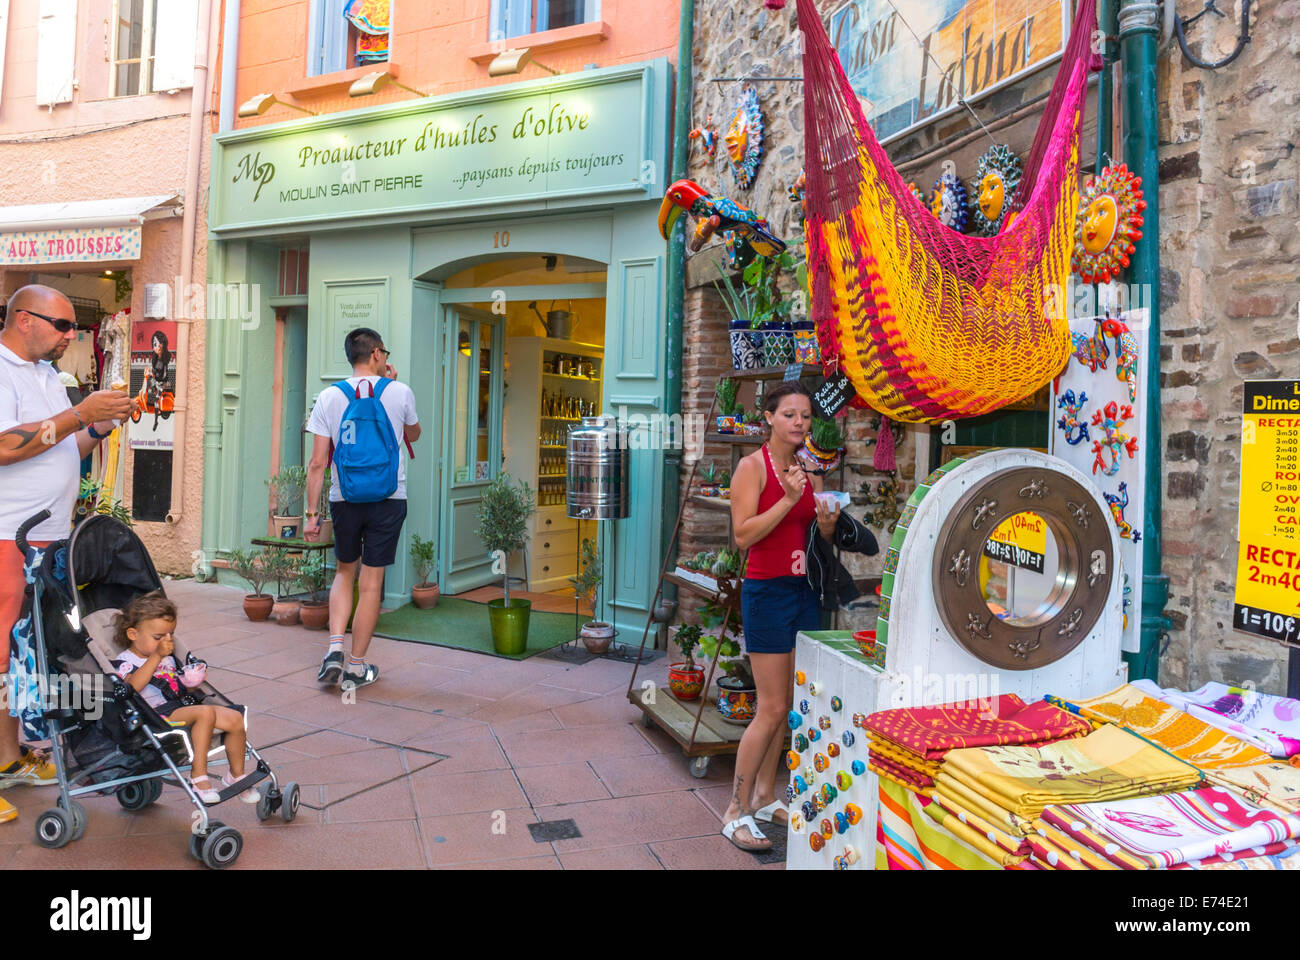 Collioure, France, touristes Shopping dans les magasins locaux, village balnéaire près de Perpignan, au sud de la France Banque D'Images